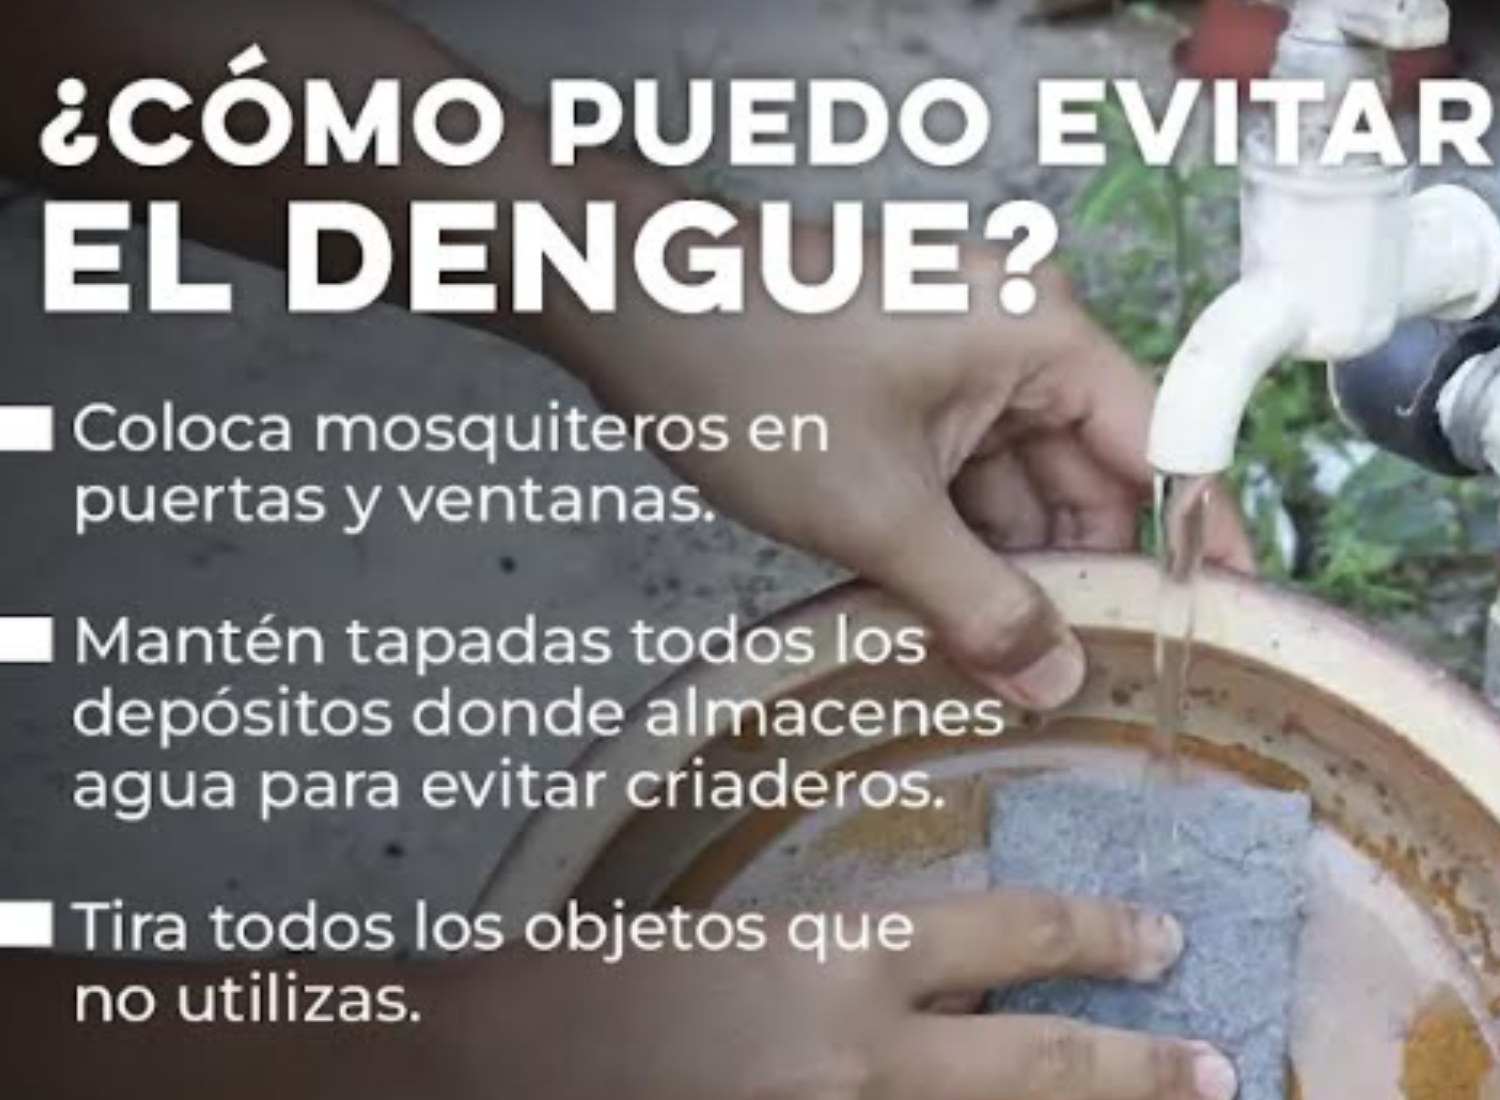 El dengue se puede prevenir manteniendo los hogares limpios